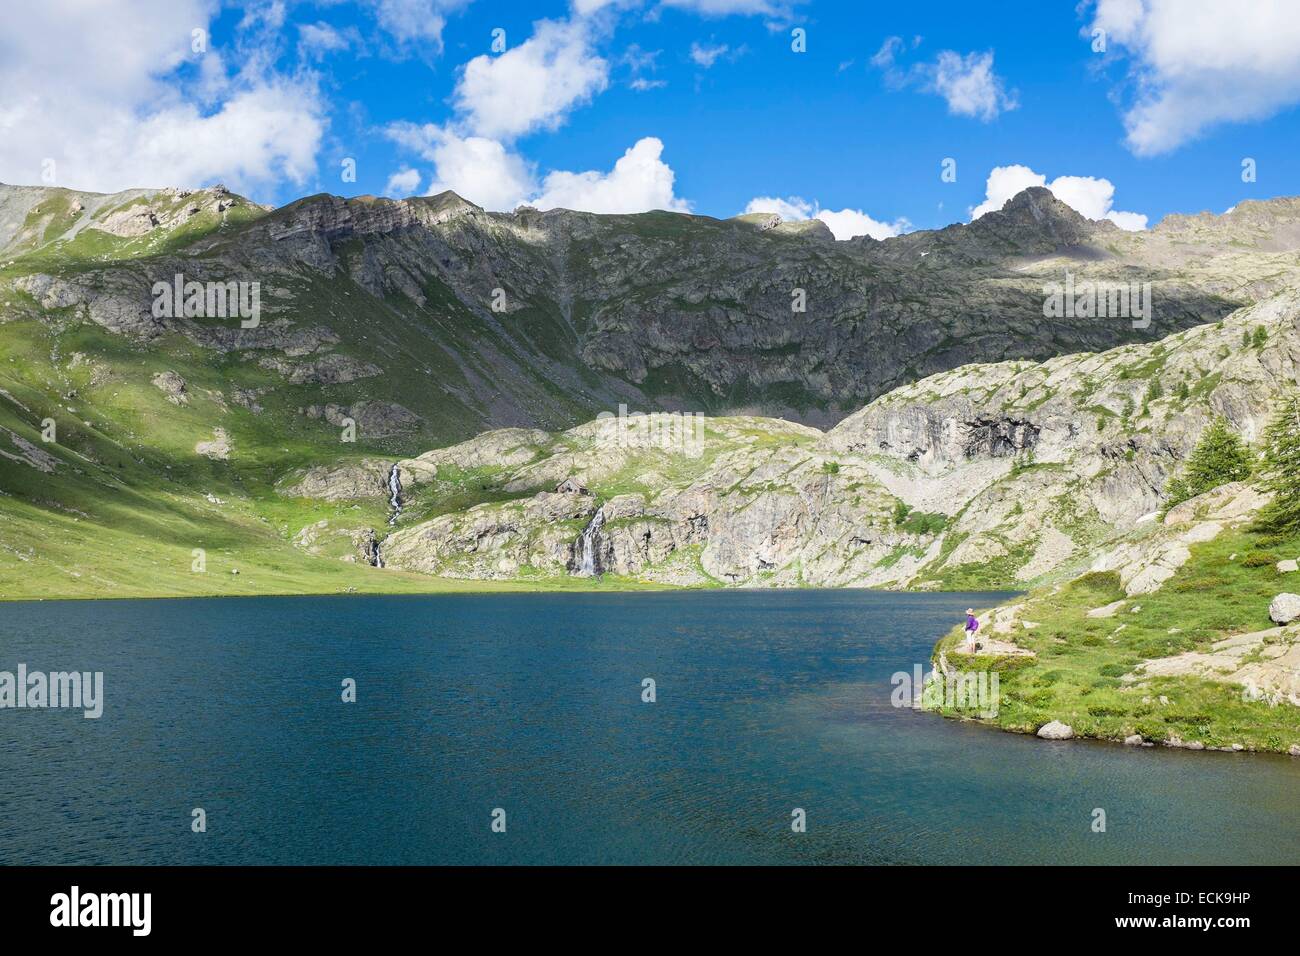 France, Alpes-Maritimes, Parc National du Mercantour, randonnées vers les lacs de Vens à partir de Saint Etienne de Tinee Vens, refuge dans l'arrière-plan (alt : 2363m) Banque D'Images